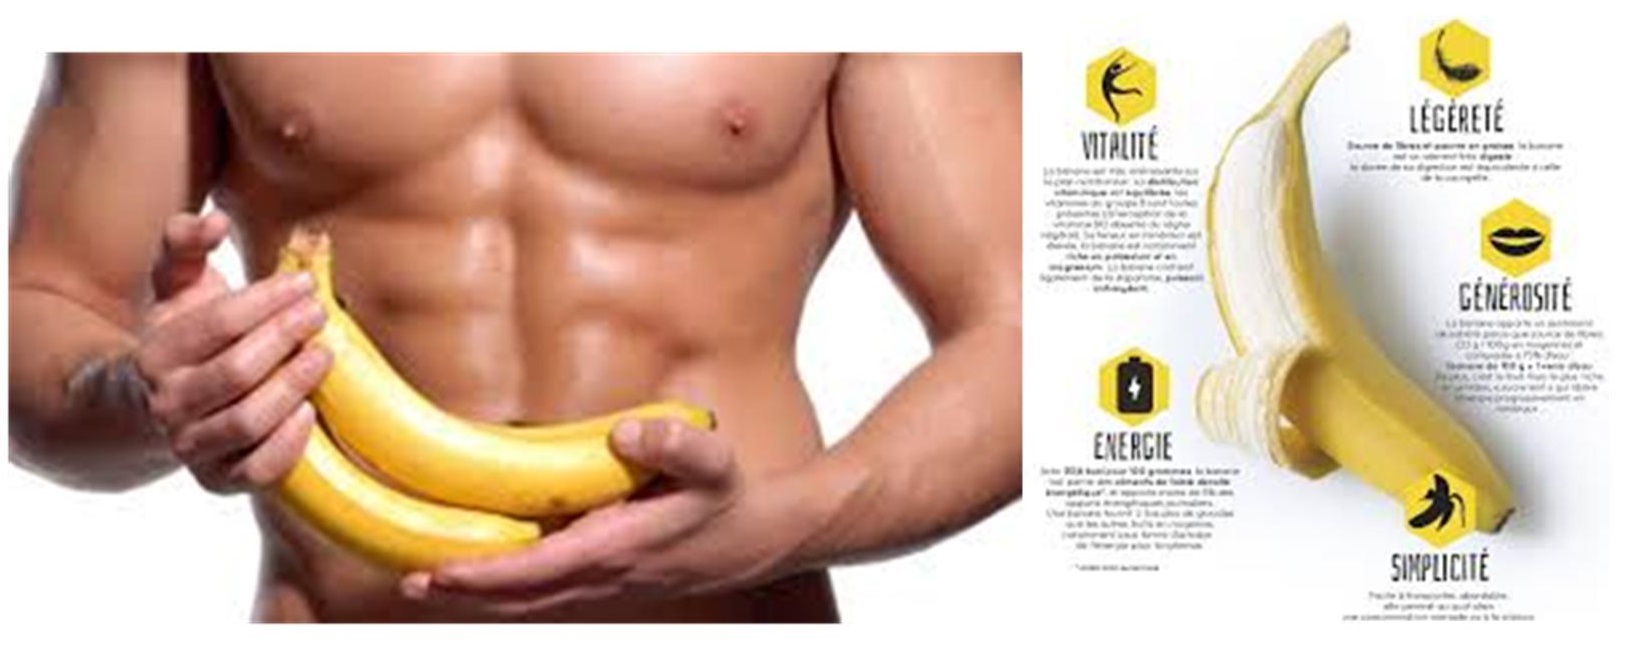 Les bienfaits de la banane sur la santé - Marie Claire